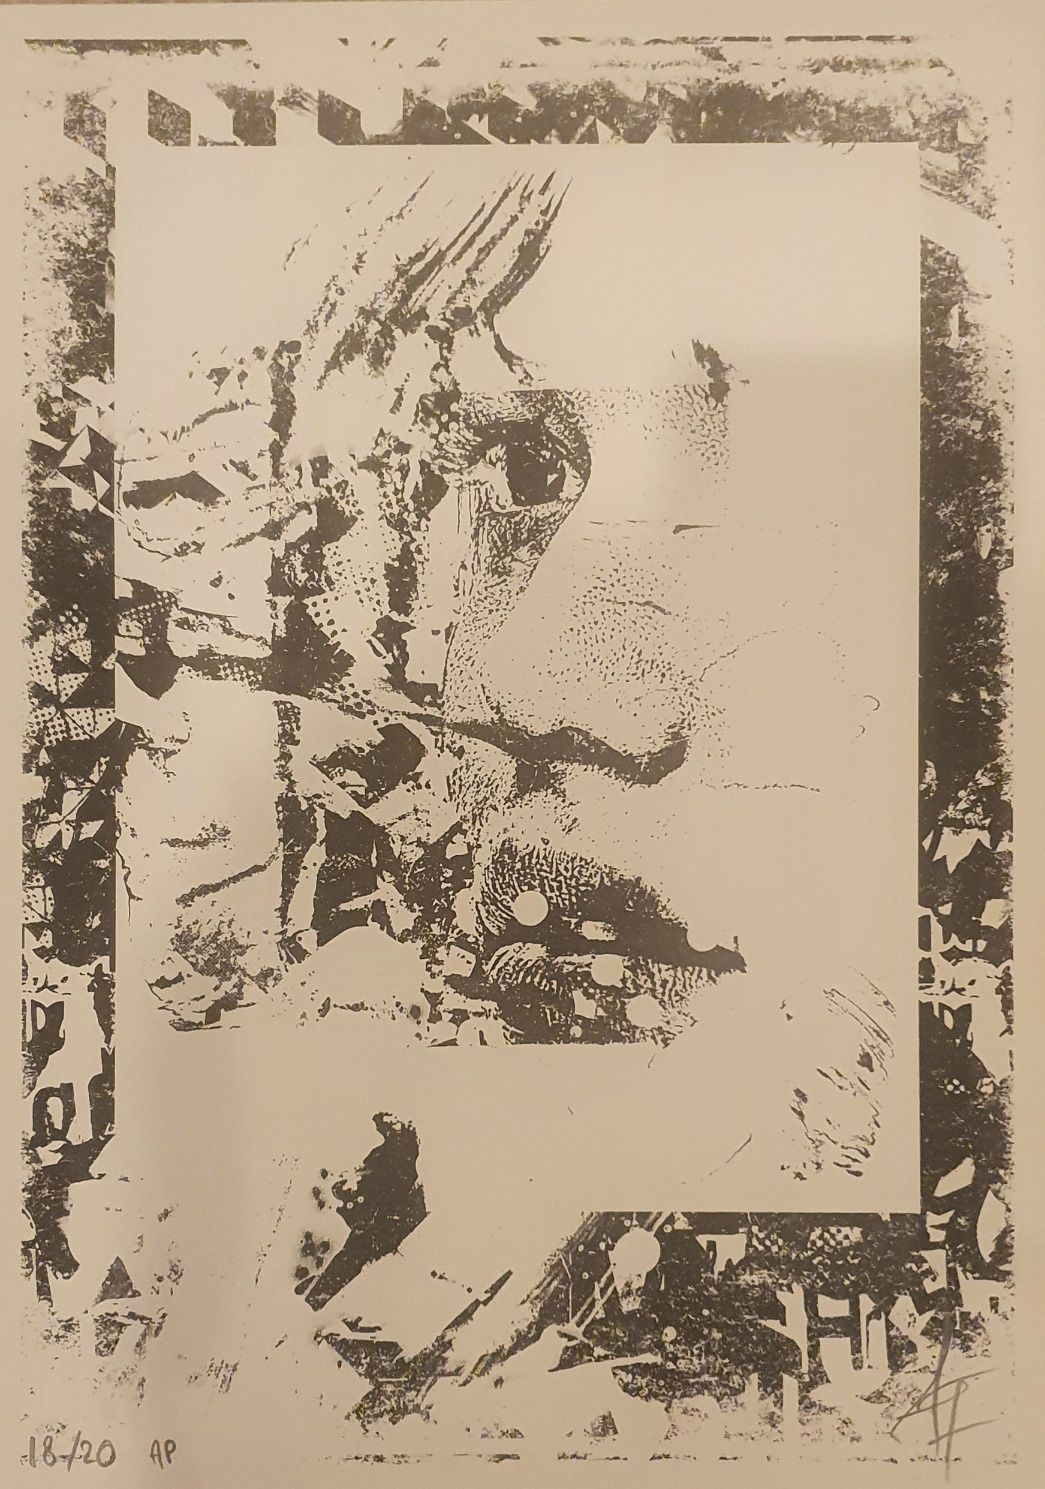 Vhils - Deplete, serigrafia   42 x 30 cm